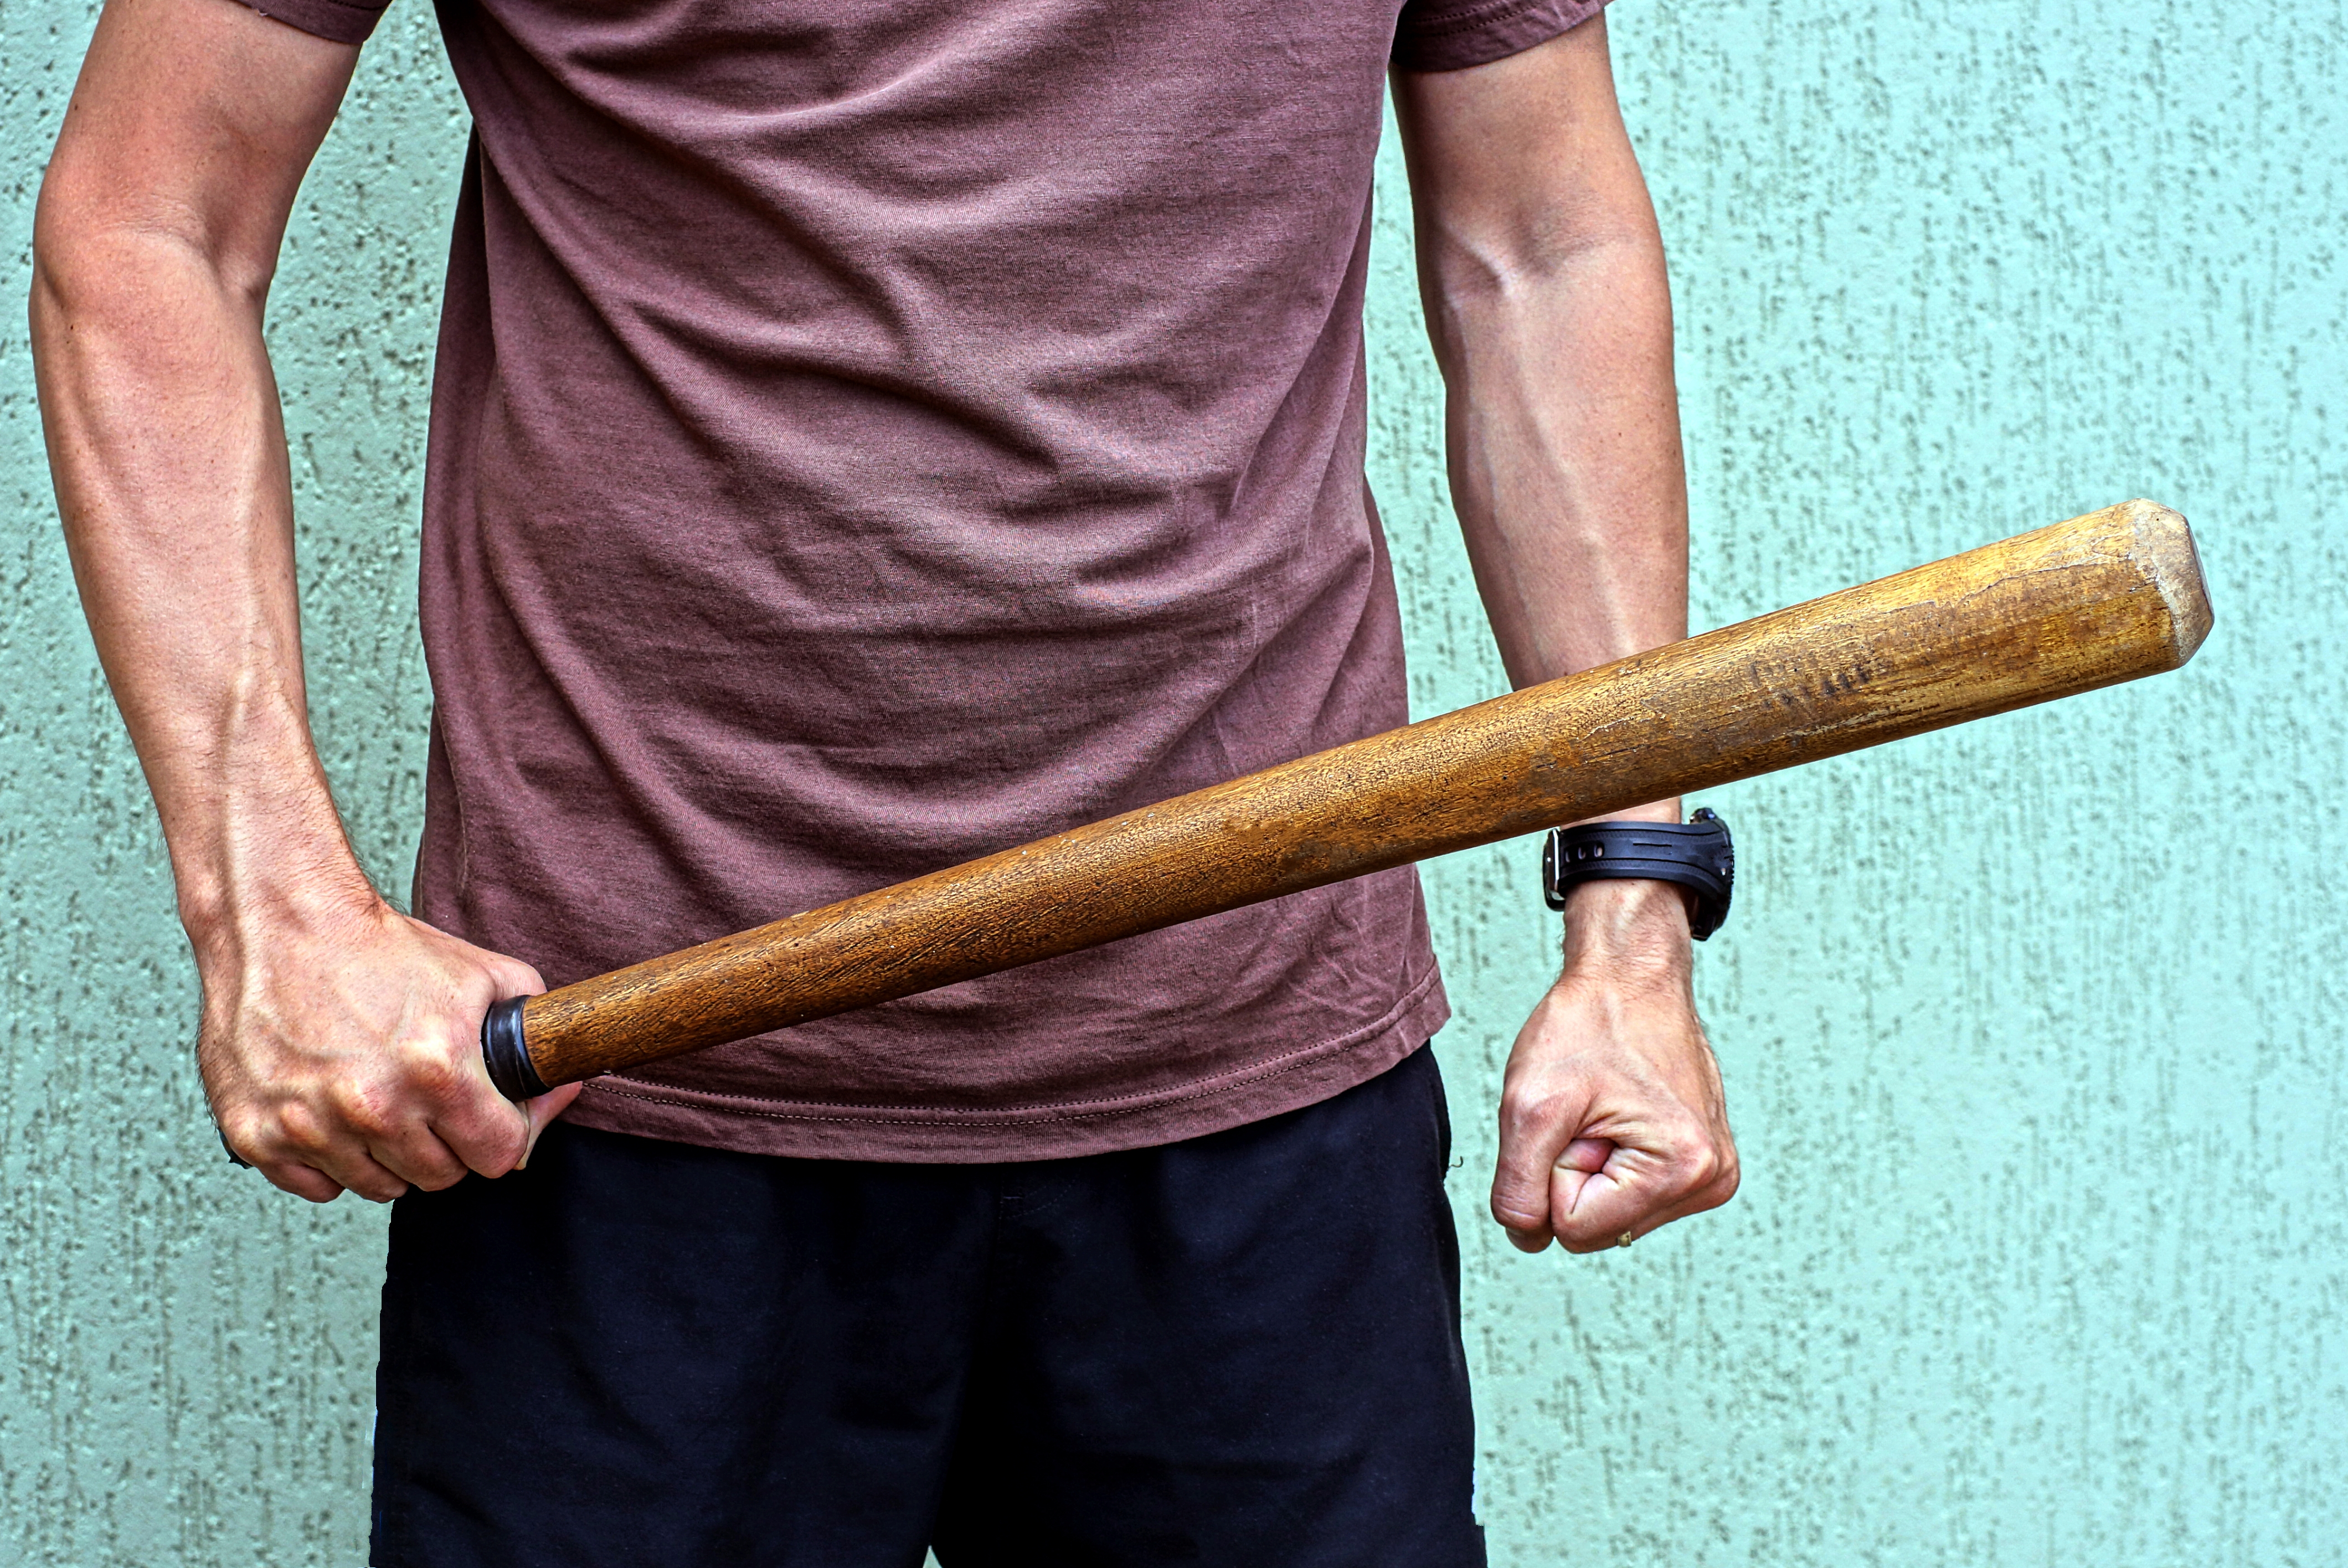 Man with a bat | Source: Shutterstock